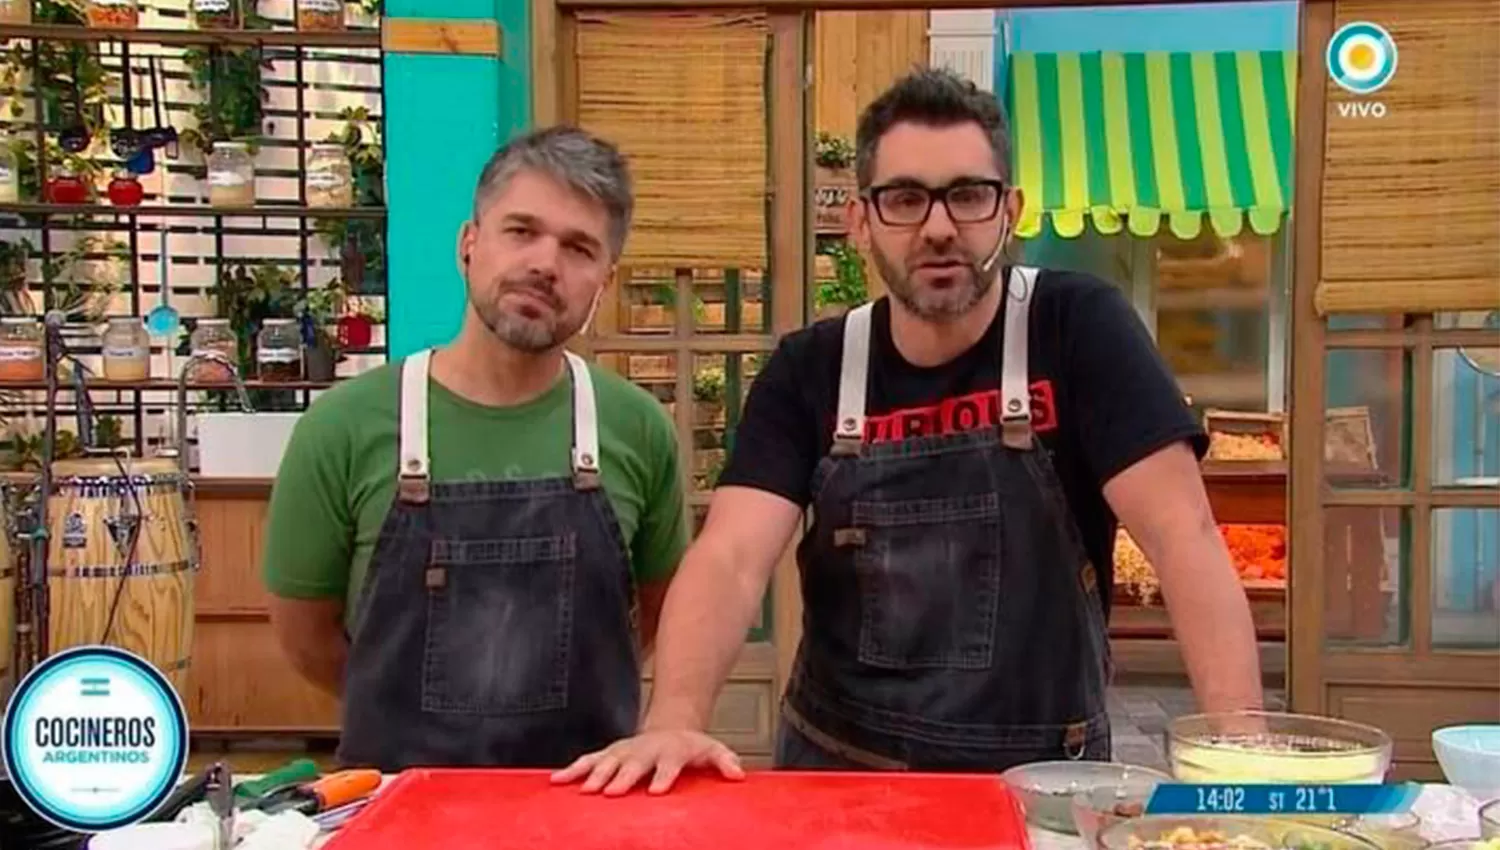 Juan Braceli y Juanito Ferrari, integrantes del programa Cocineros Argentinos acercaron sus disculpas al público tras la polémica. FOTO TOMADA DE ELTRIBUNO.COM